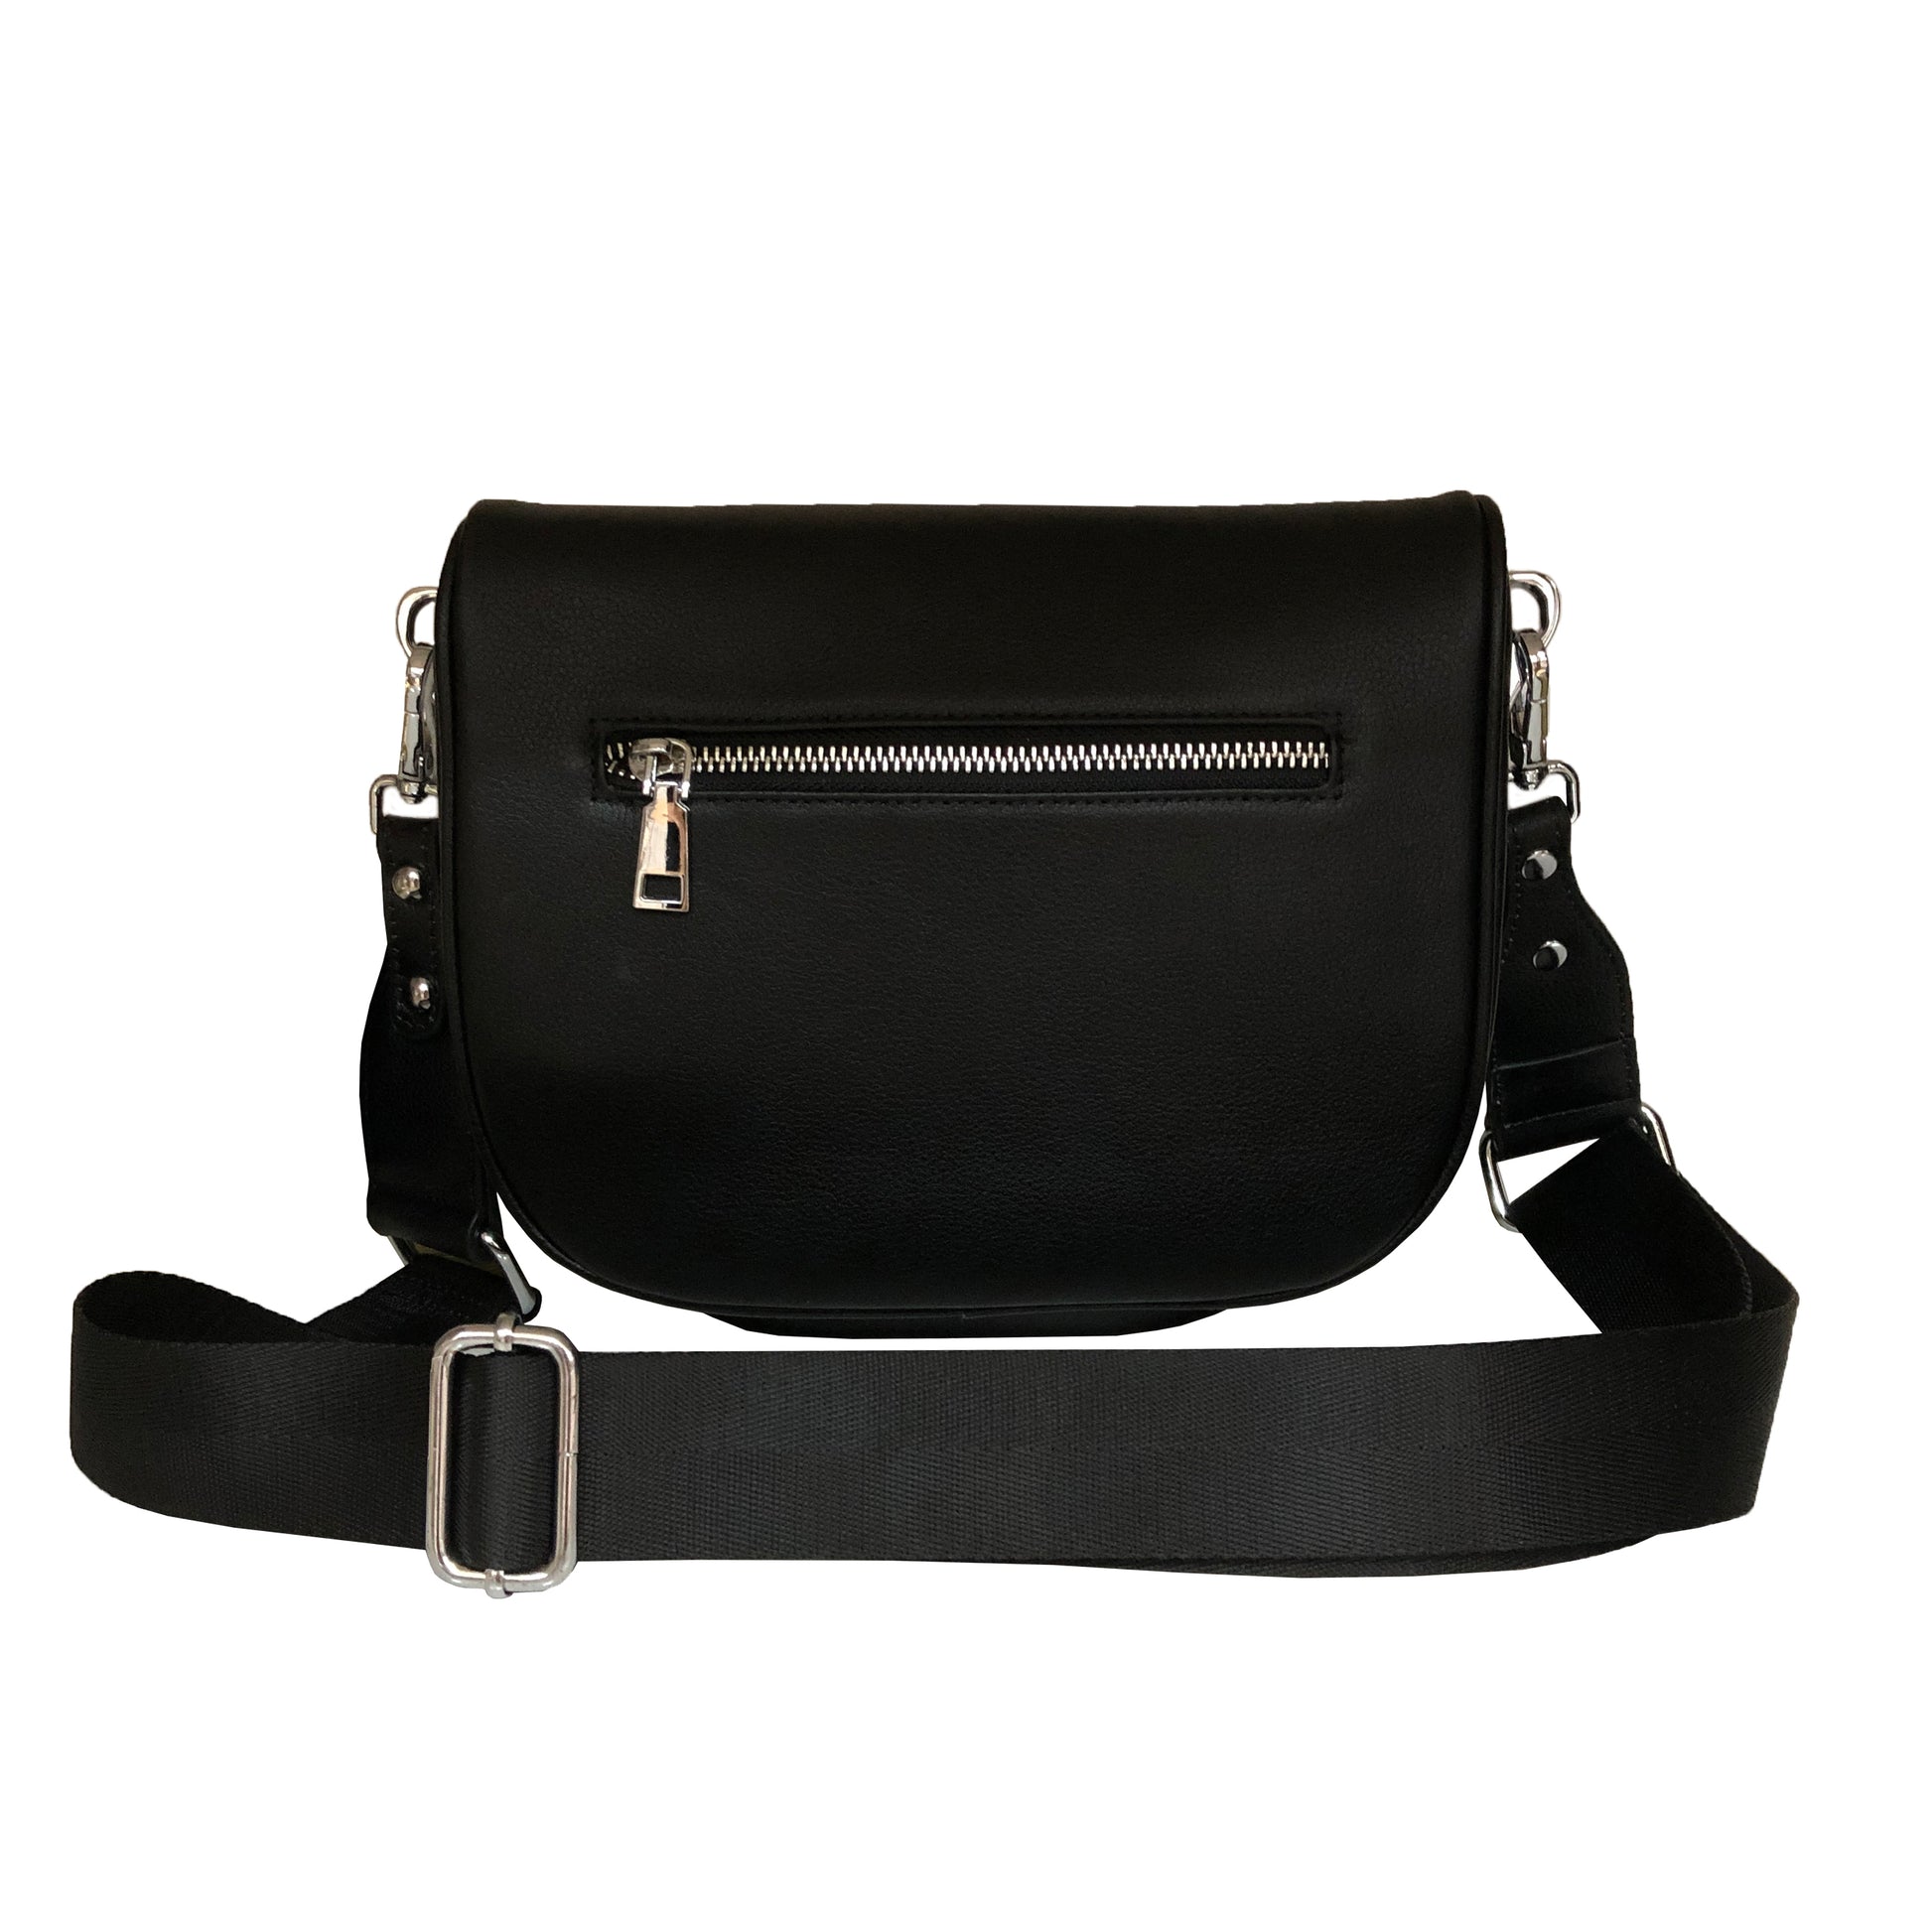 Women's genuine cowhide leather handbag Tilo design camera bag by Tomorrow Closet